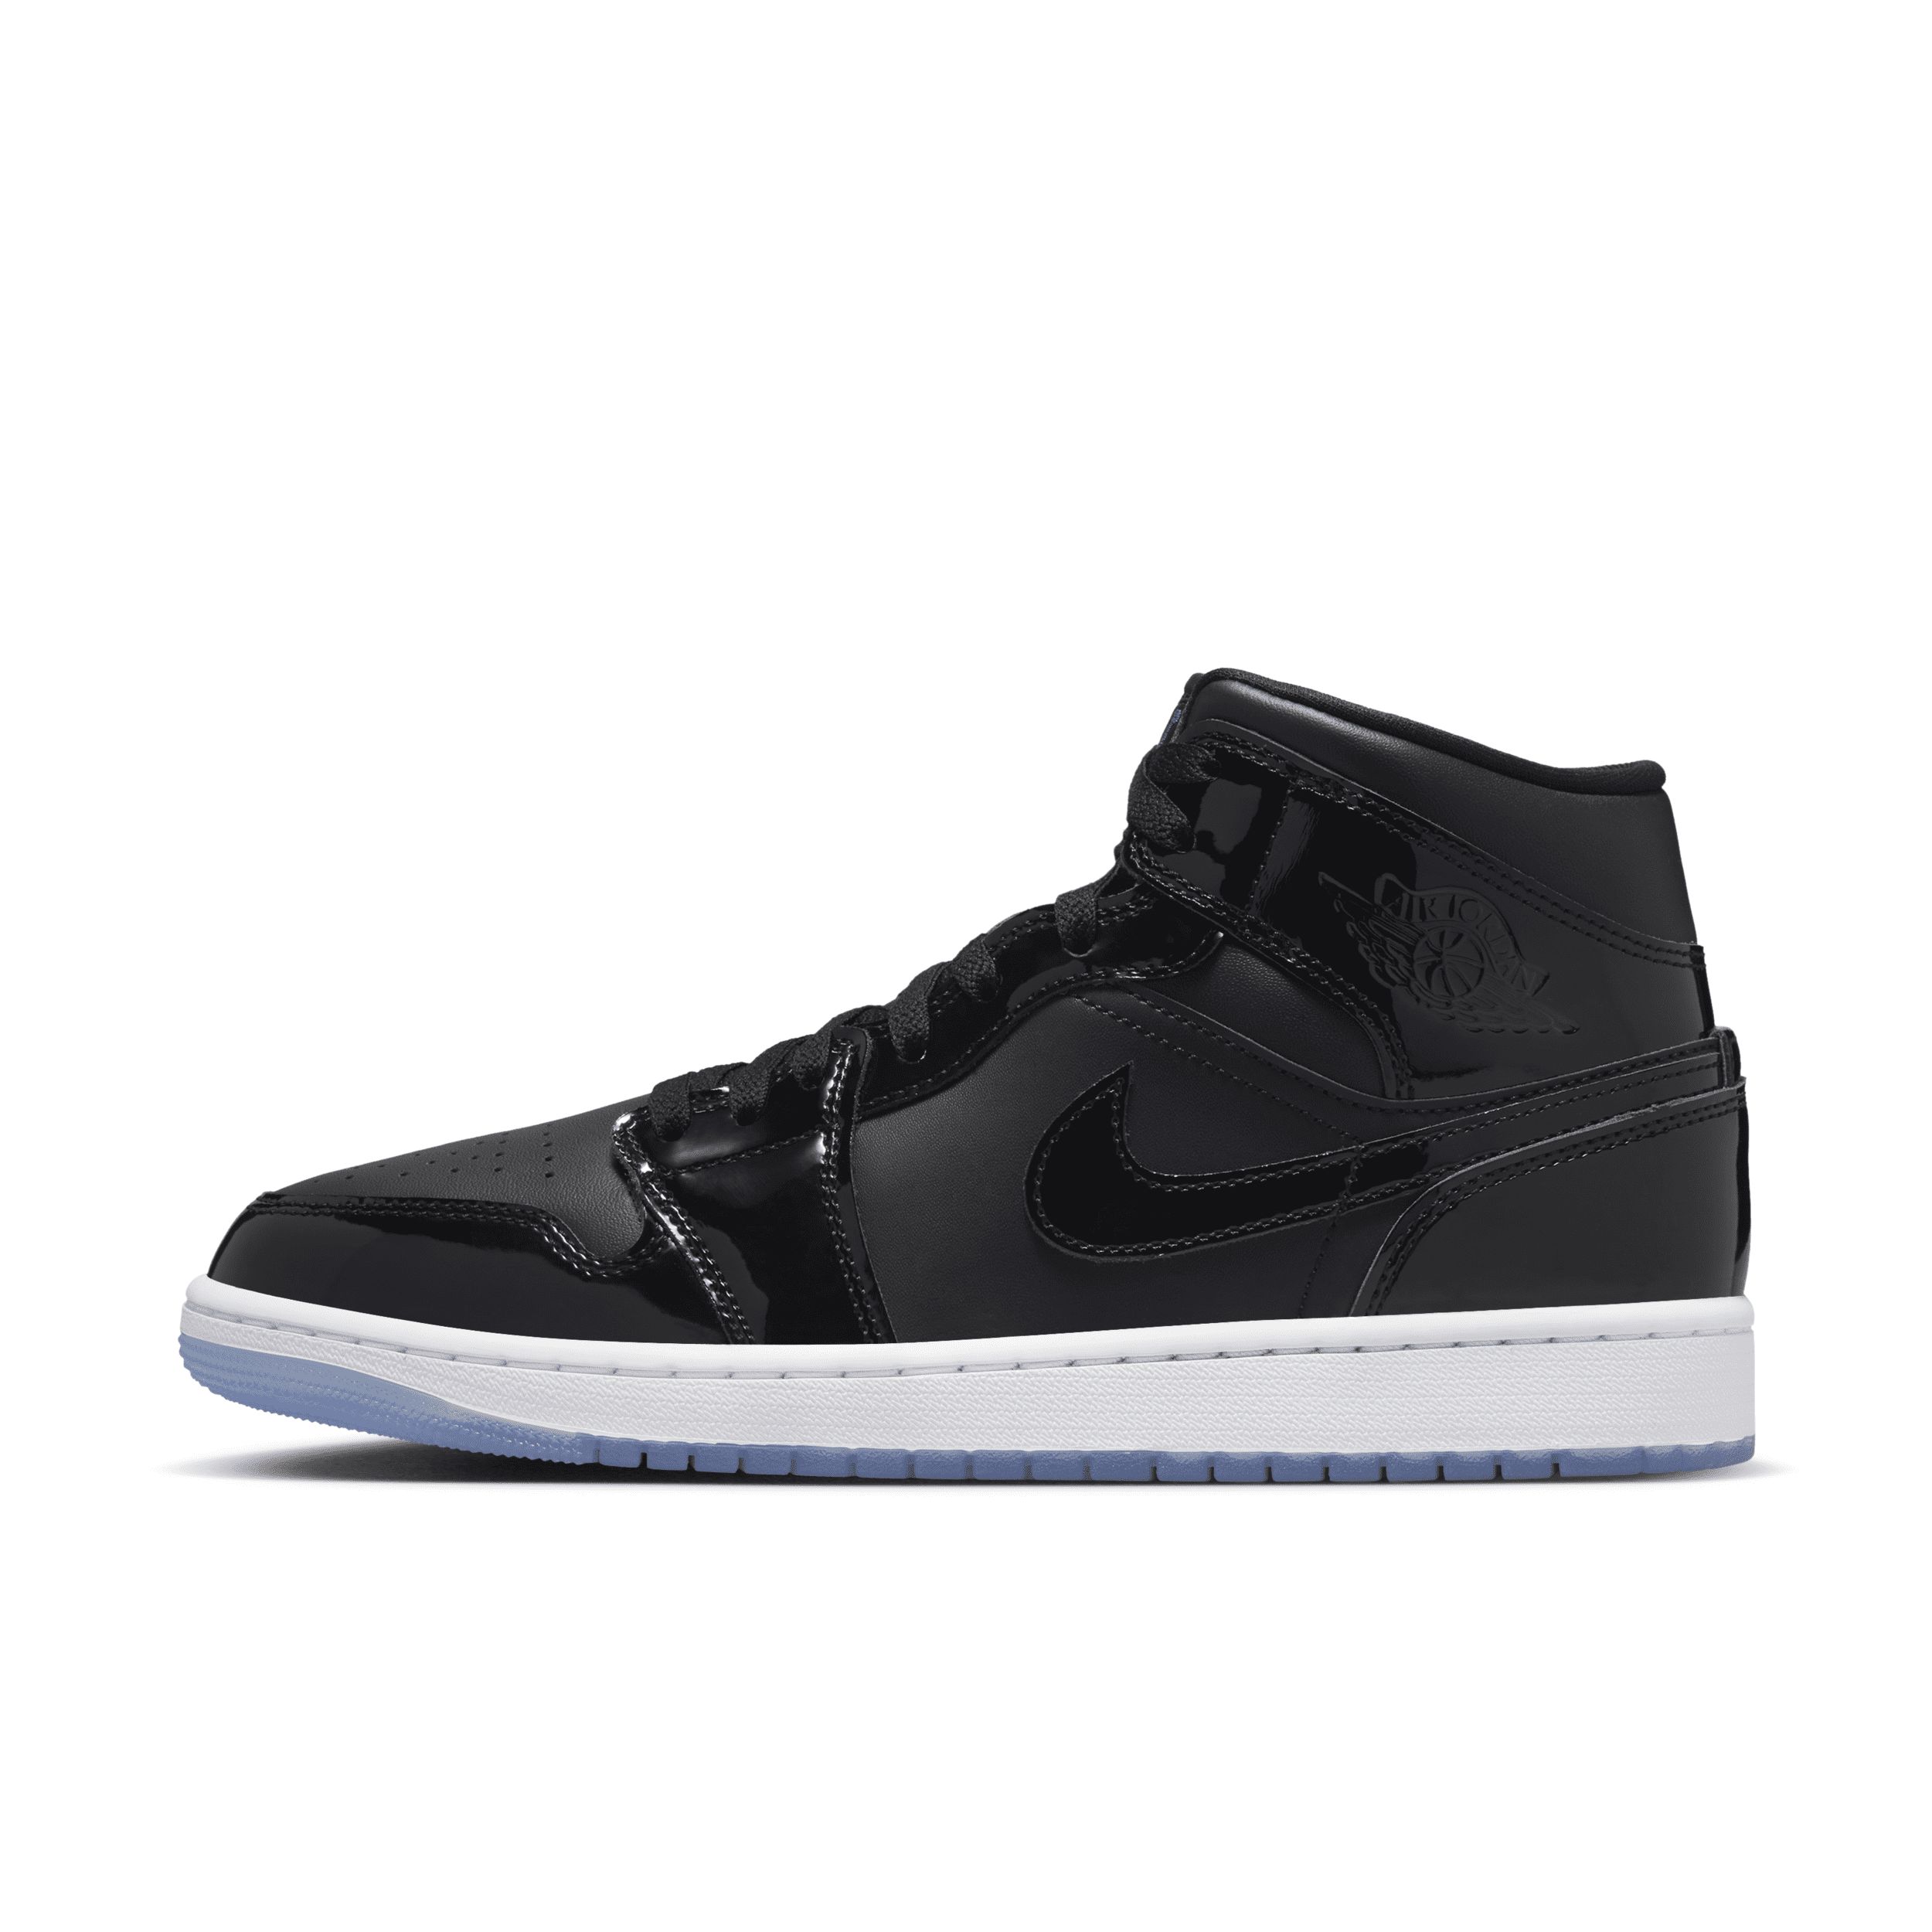 Men's Air Jordan 1 Mid SE Shoes in Black, Size: 9.5 | DV1308-004 | Nike (US)